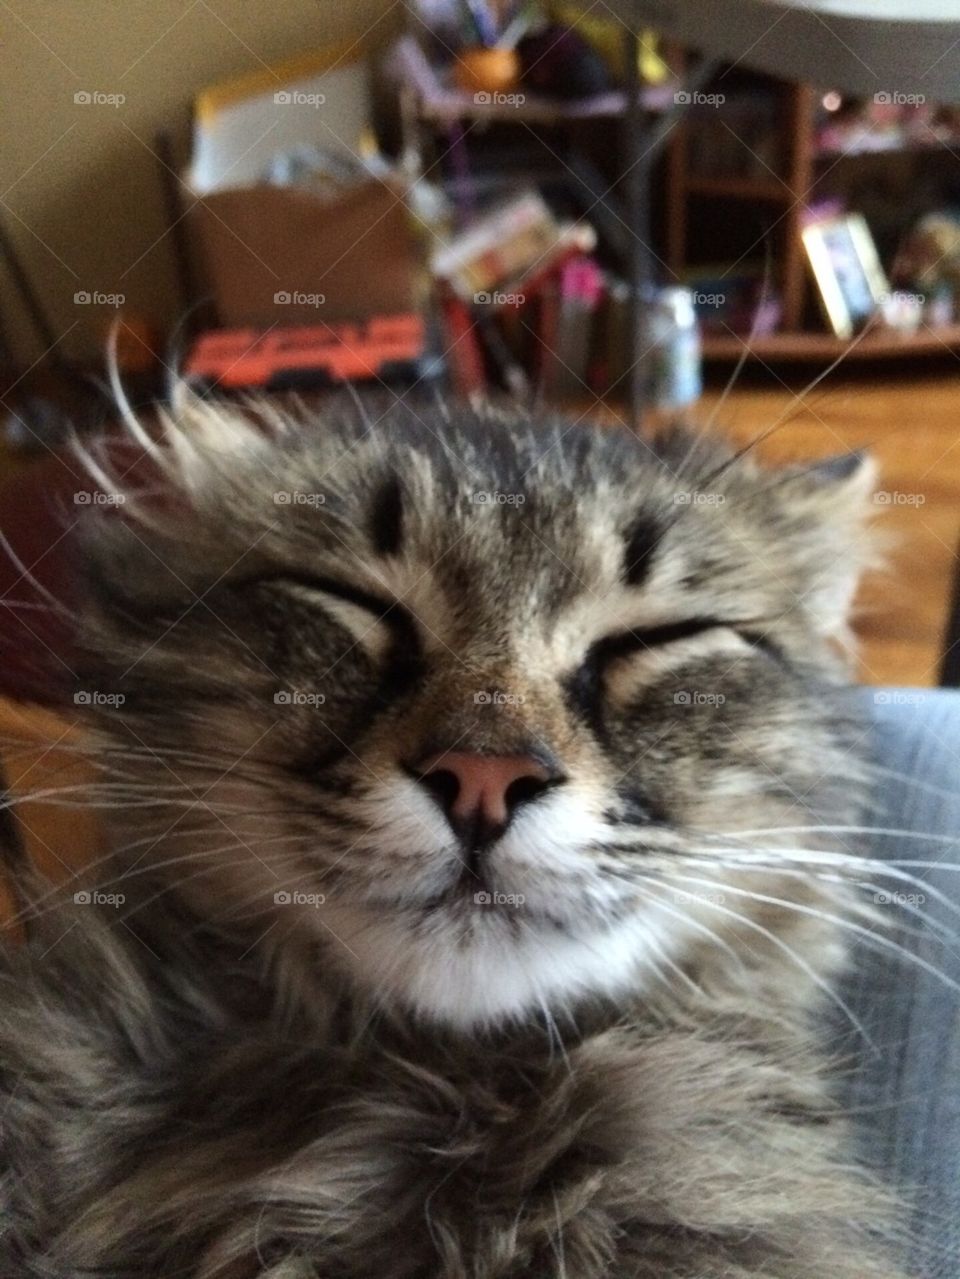 Cat's selfie in the sleep